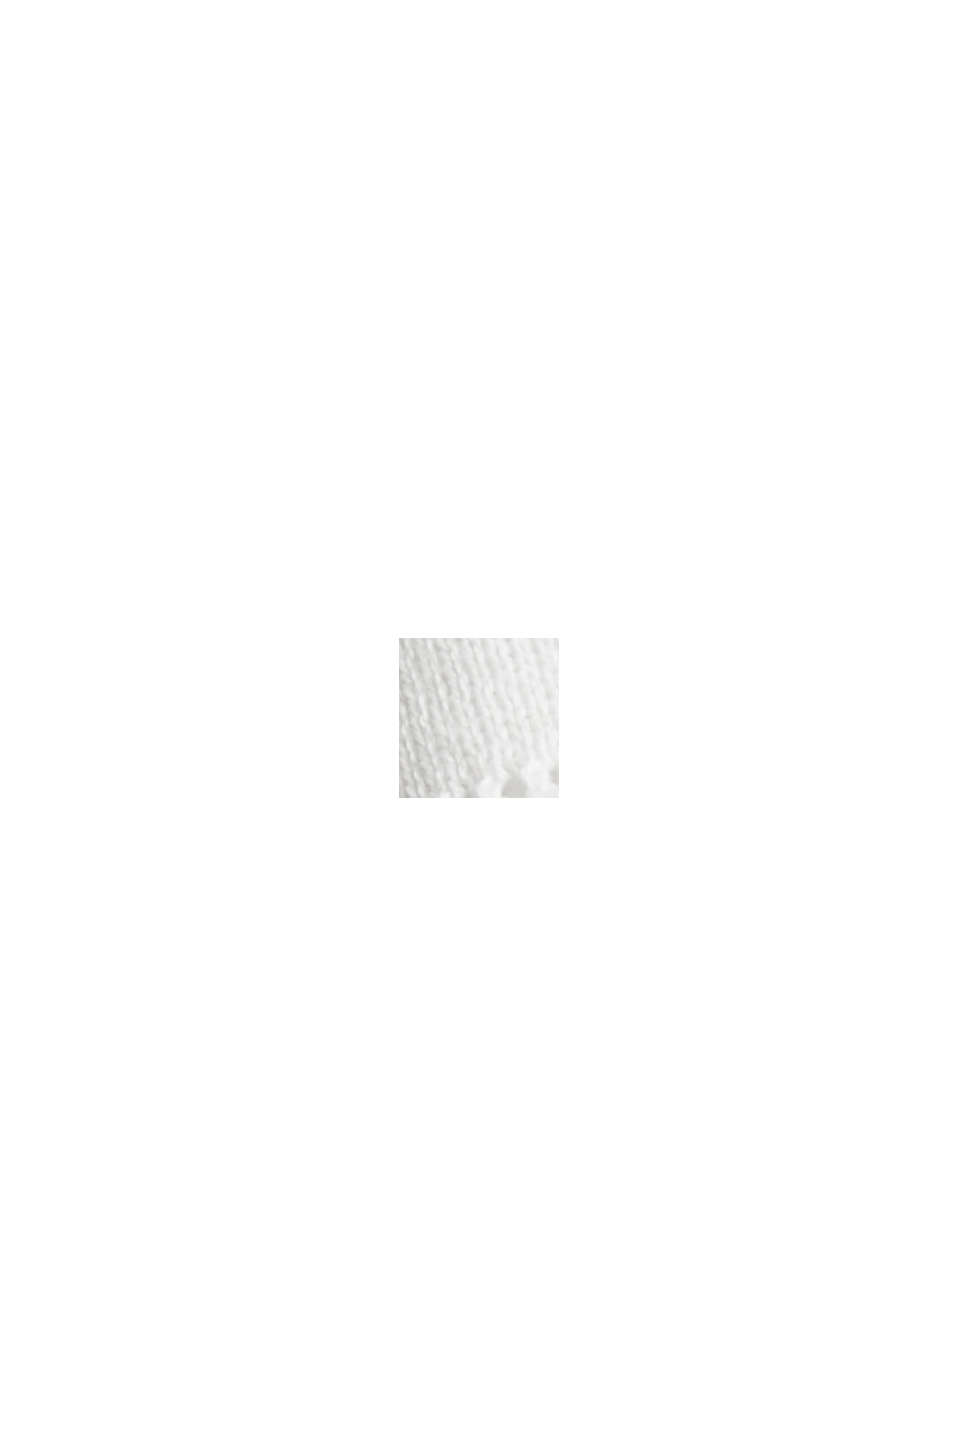 Jersey de algodón ecológico con diseño, OFF WHITE, swatch